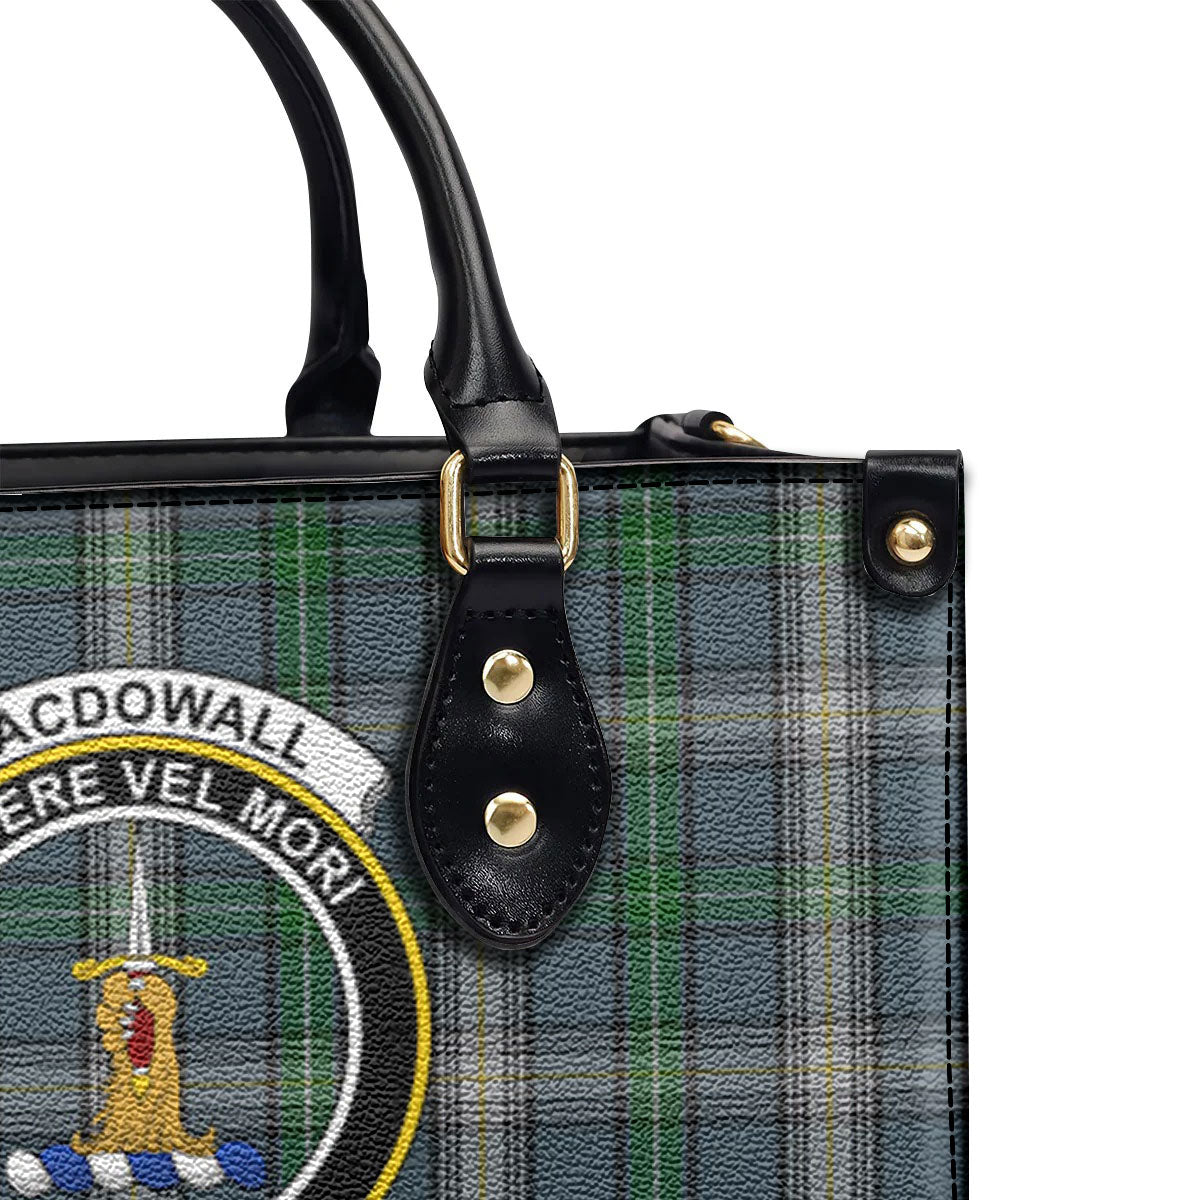 MacDowall Tartan Crest Leather Handbag